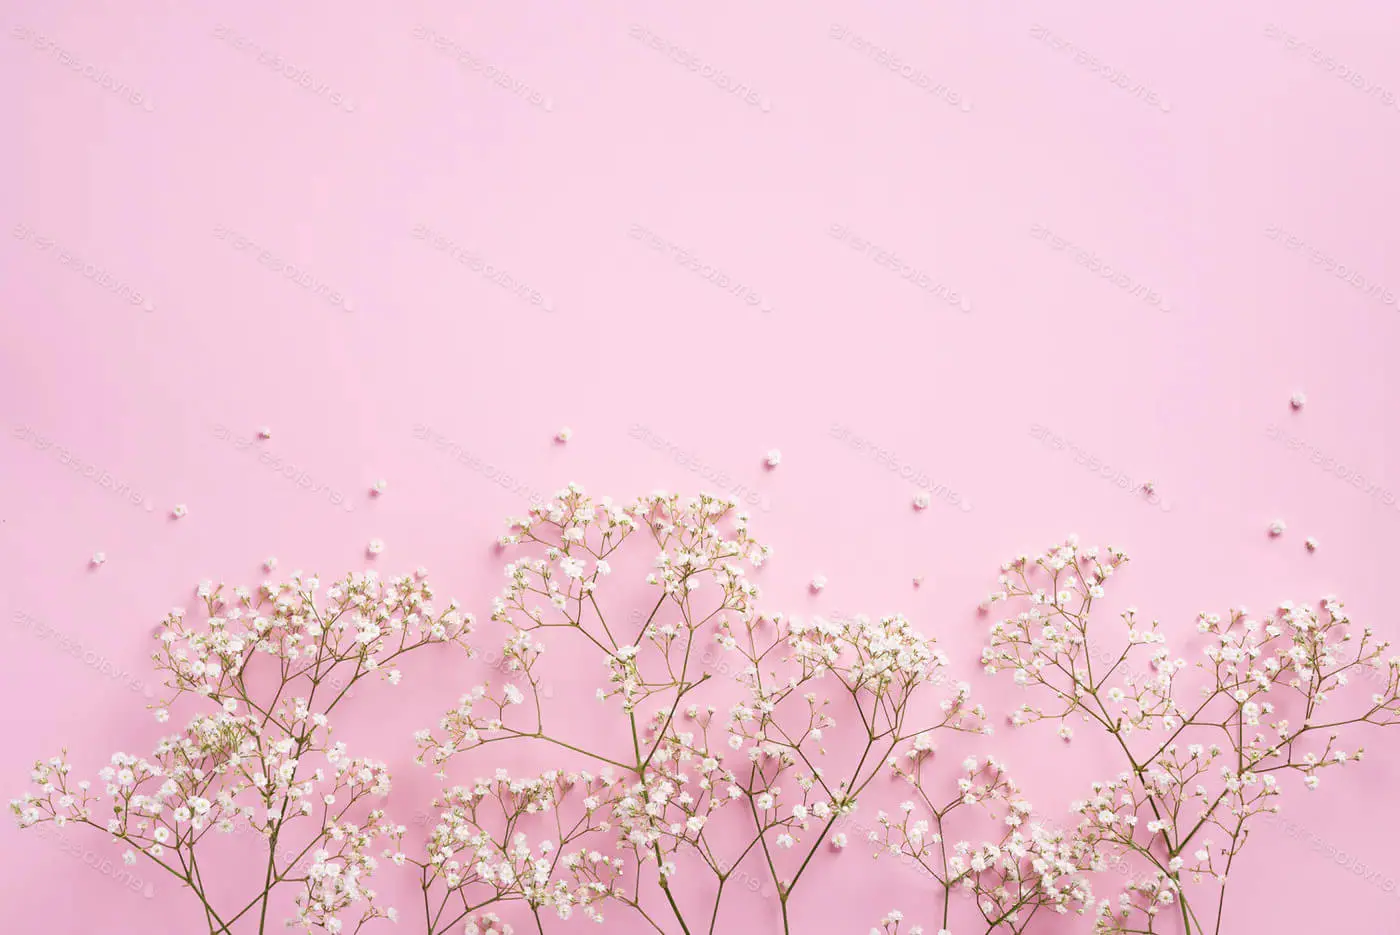 99 wallpaper merah muda pastel teratas - Latar belakang merah muda yang indah